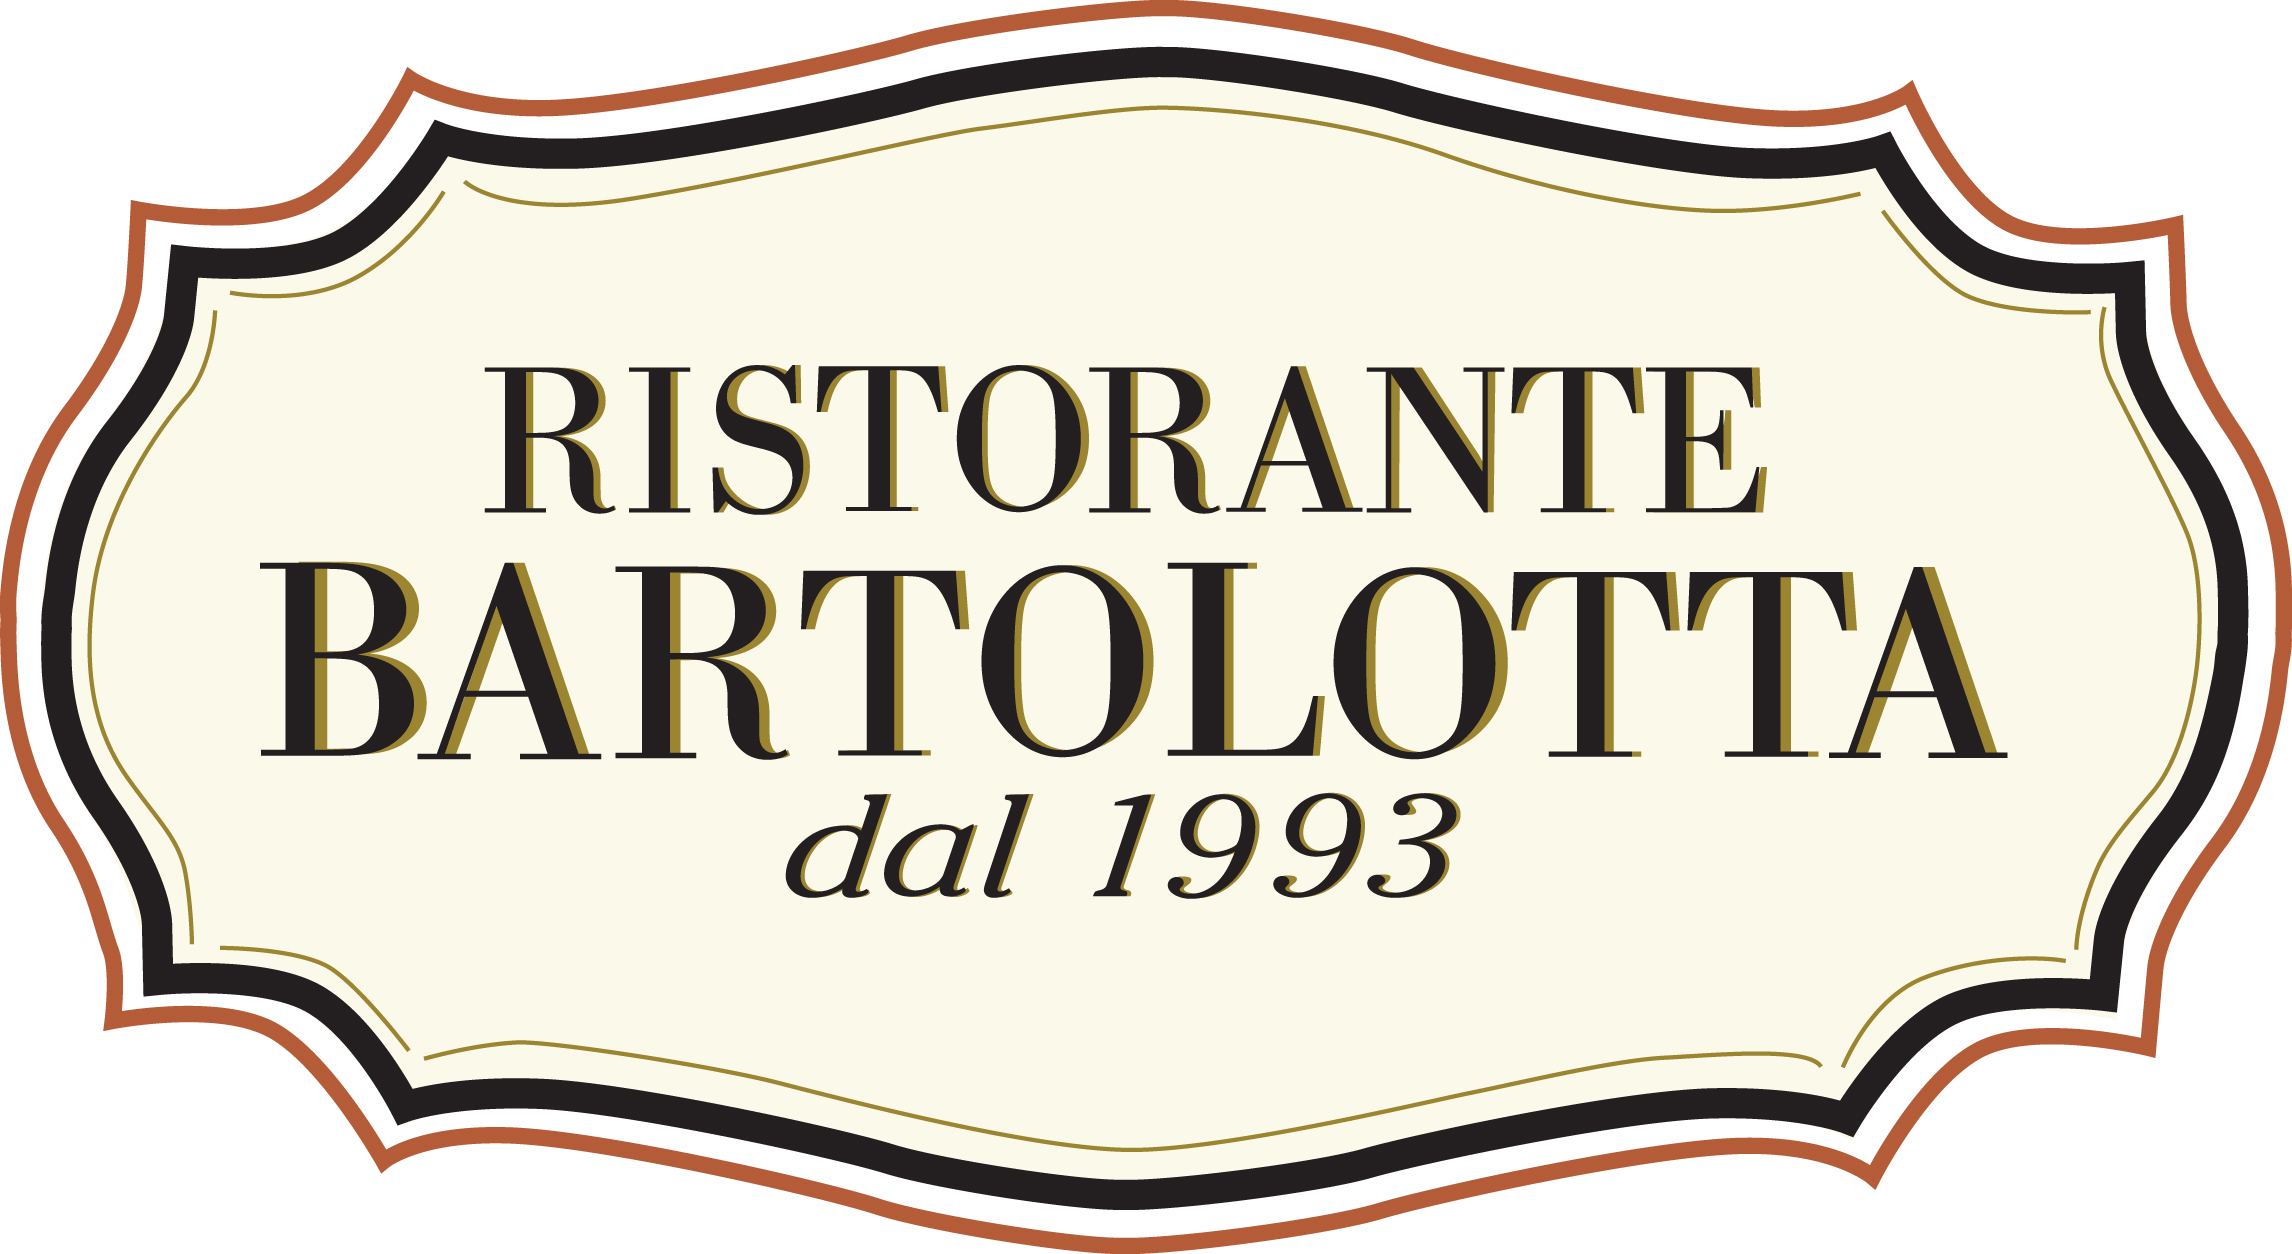 RISTORANTE BARTOLOTTA - dal 1993